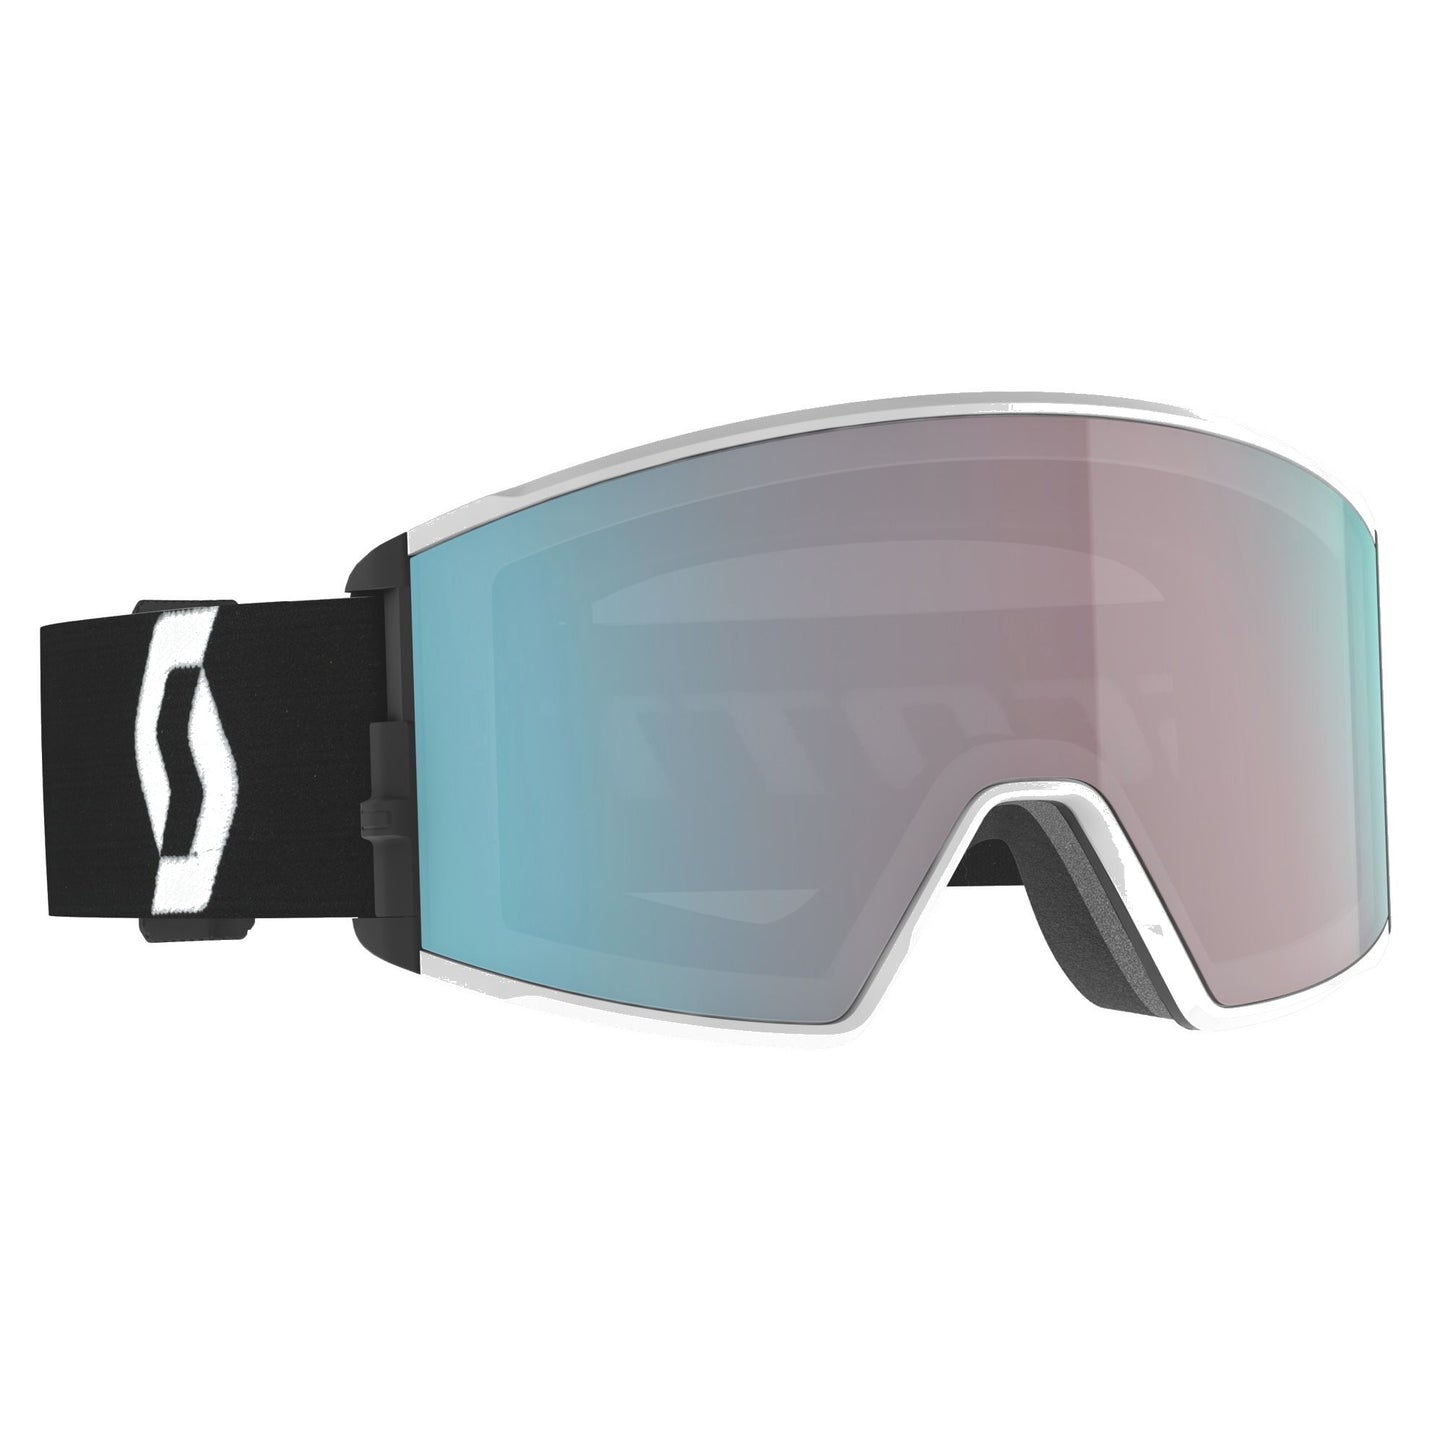 Scott React Snow Goggle Team White Black Enhancer Aqua Chrome Snow Goggles